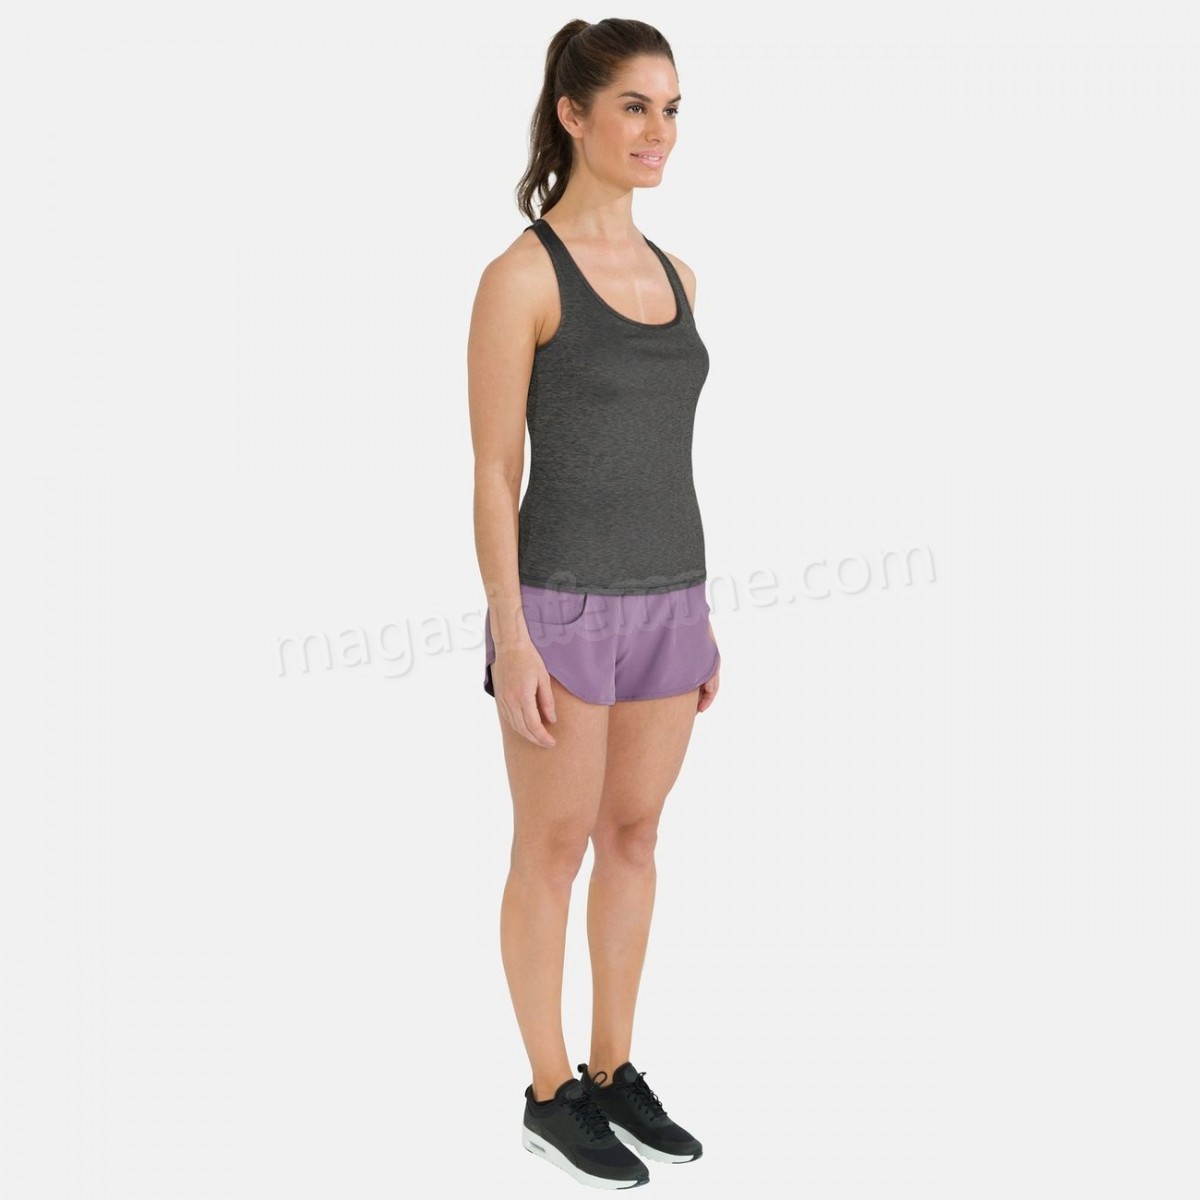 Odlo-Fitness femme ODLO Odlo Maia Ease Shorts en solde - -7